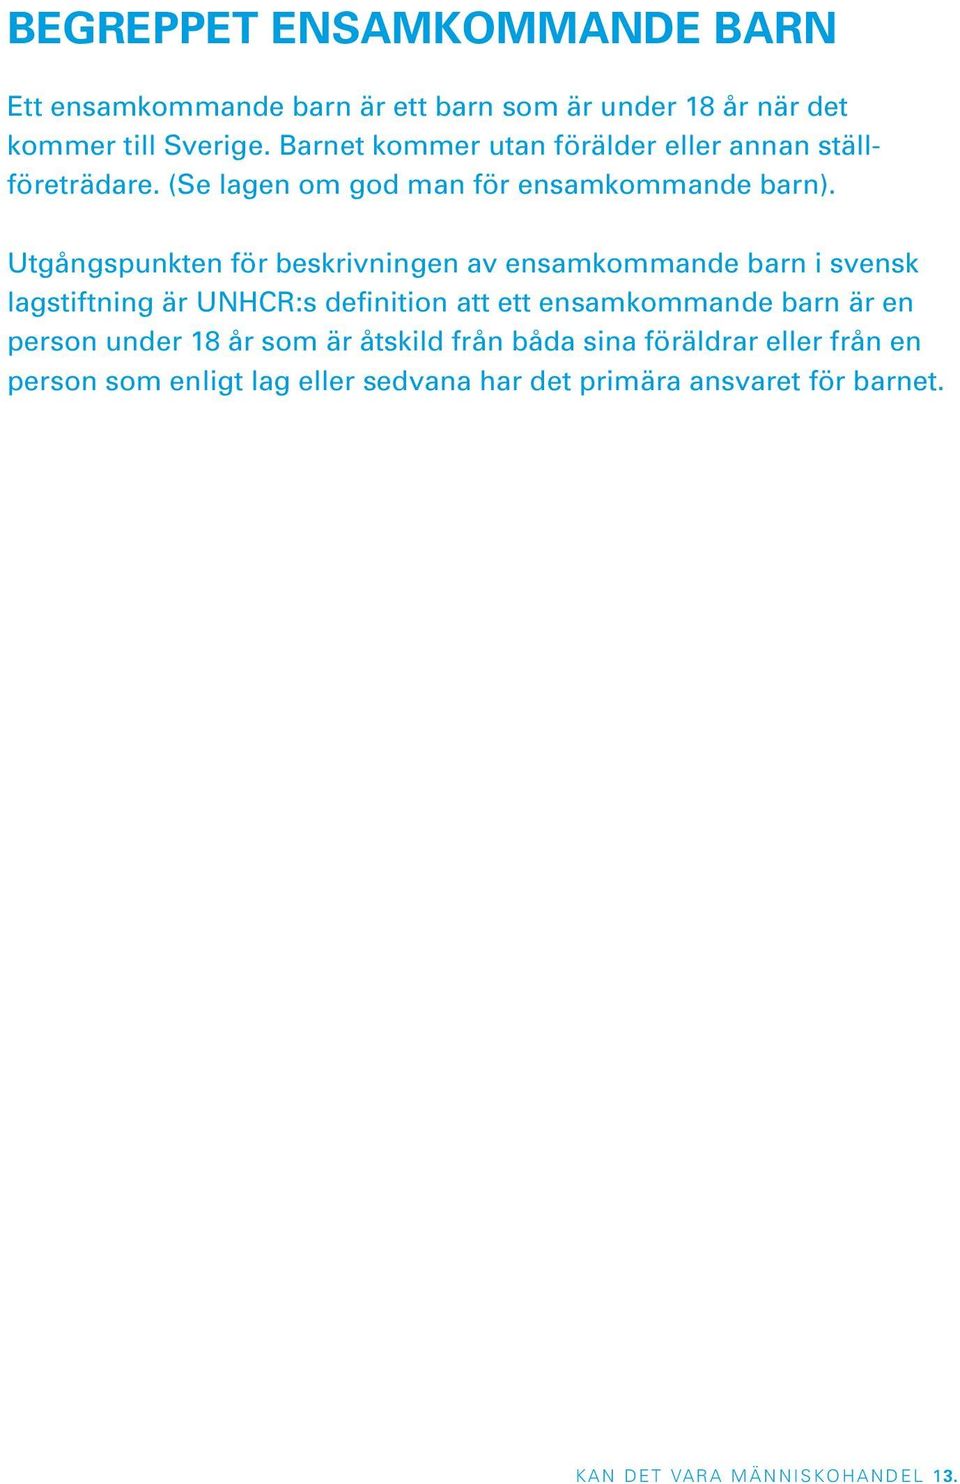 Utgångspunkten för beskrivningen av ensamkommande barn i svensk lagstiftning är UNHCR:s definition att ett ensamkommande barn är en